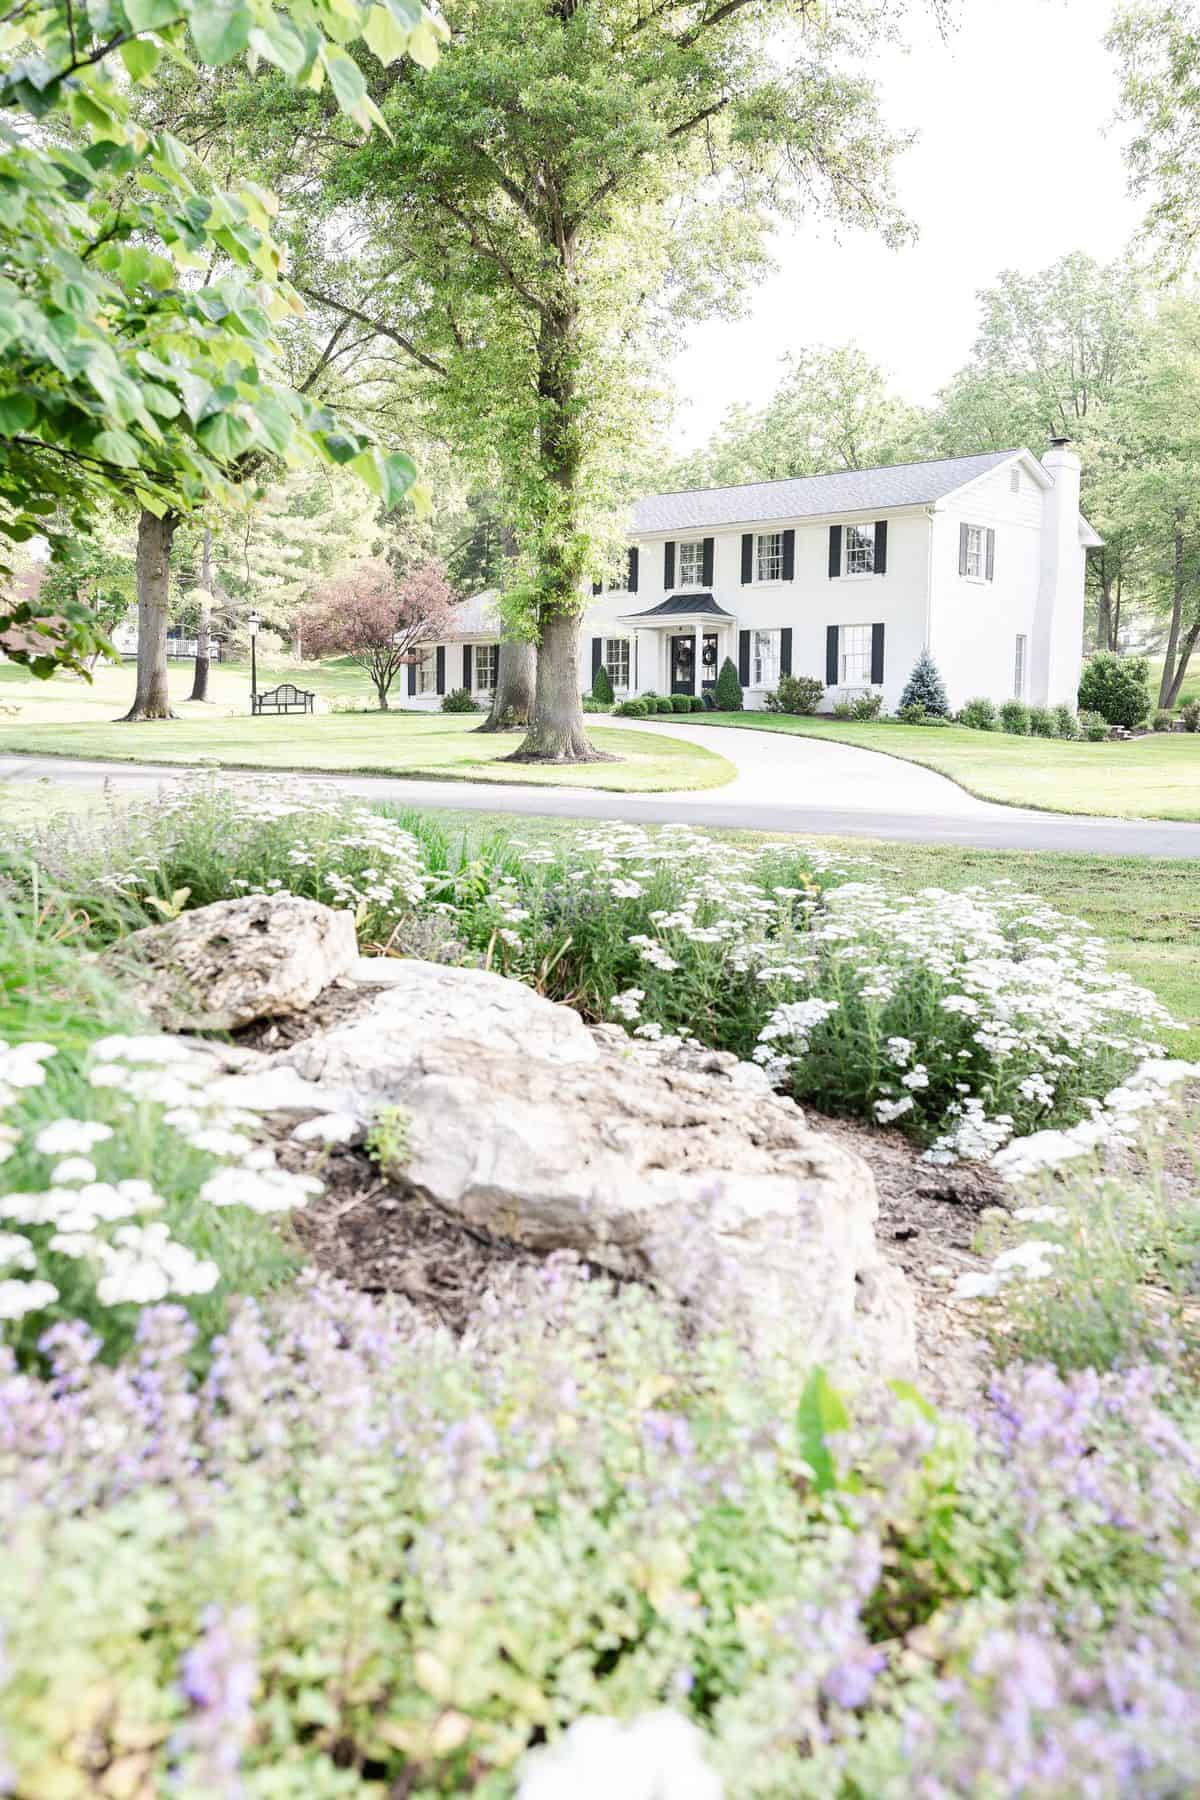 一座白砖房坐落在绿树和鲜花之间。